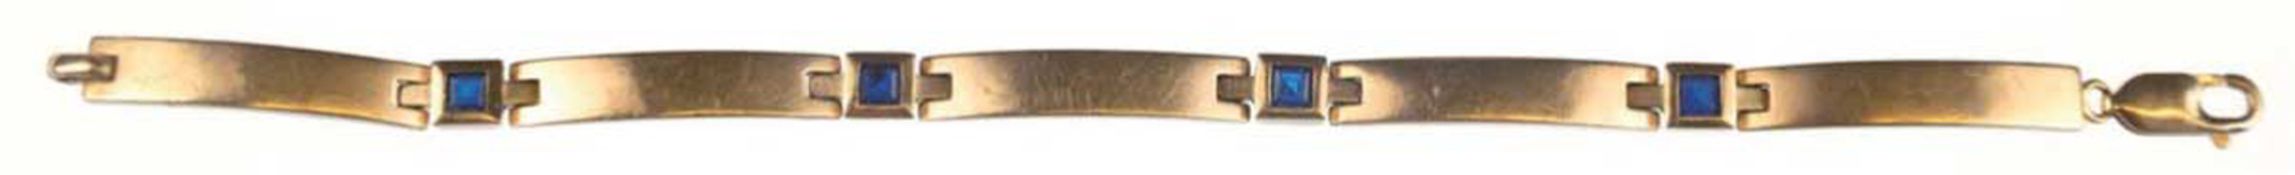 Saphir-Armband, 333er quaderförmige GG-Glieder, alternierend mit 4 quadratischen Gliedern, die mit 